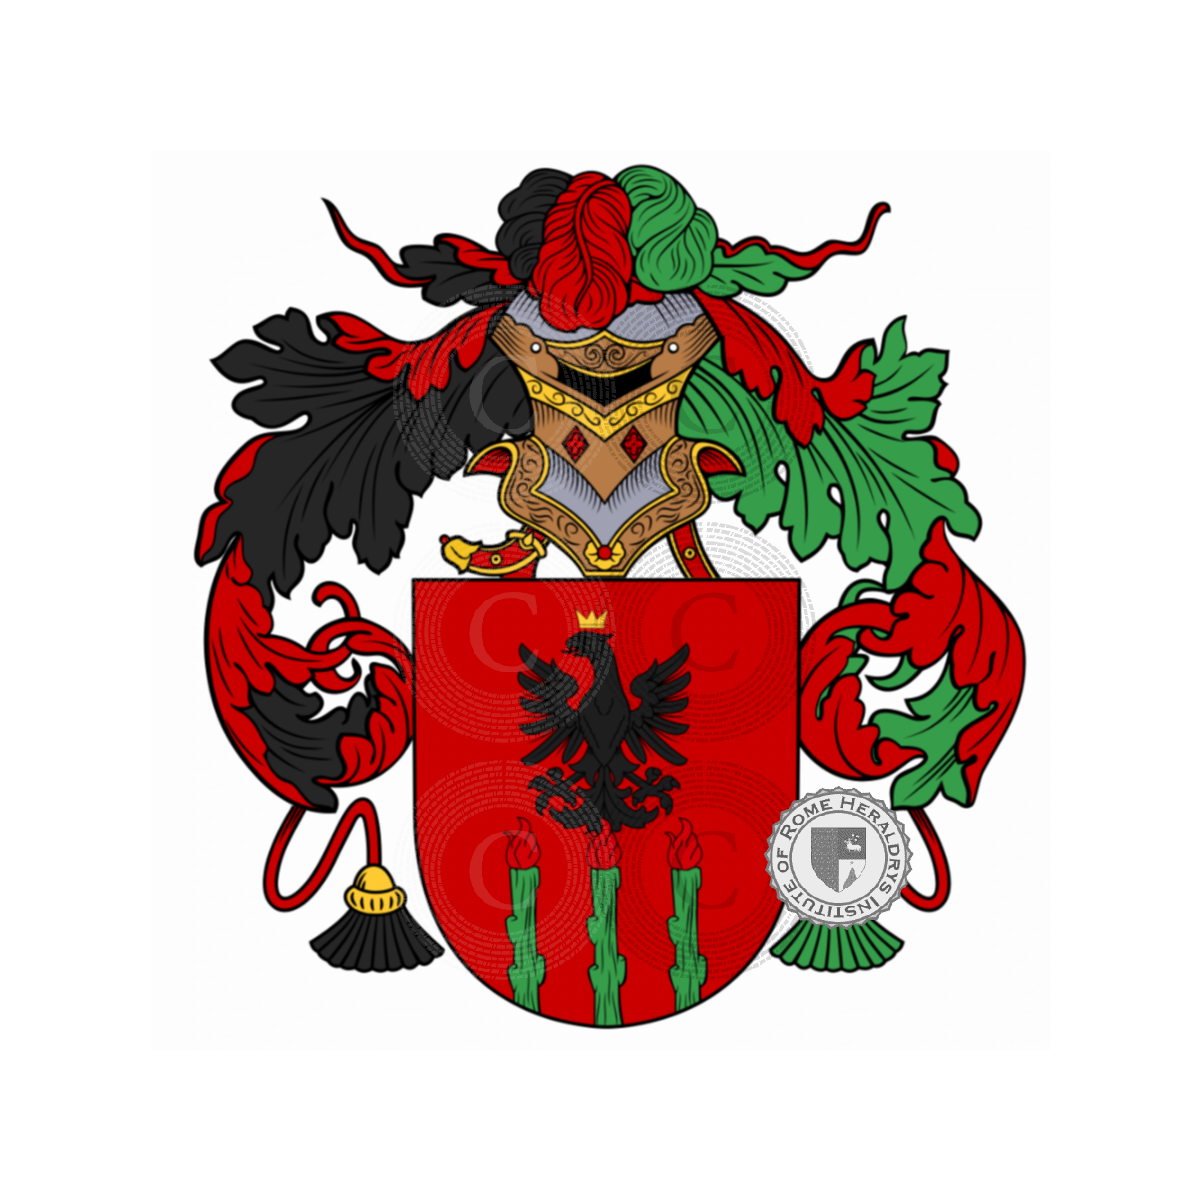 Wappen der FamiliePardo